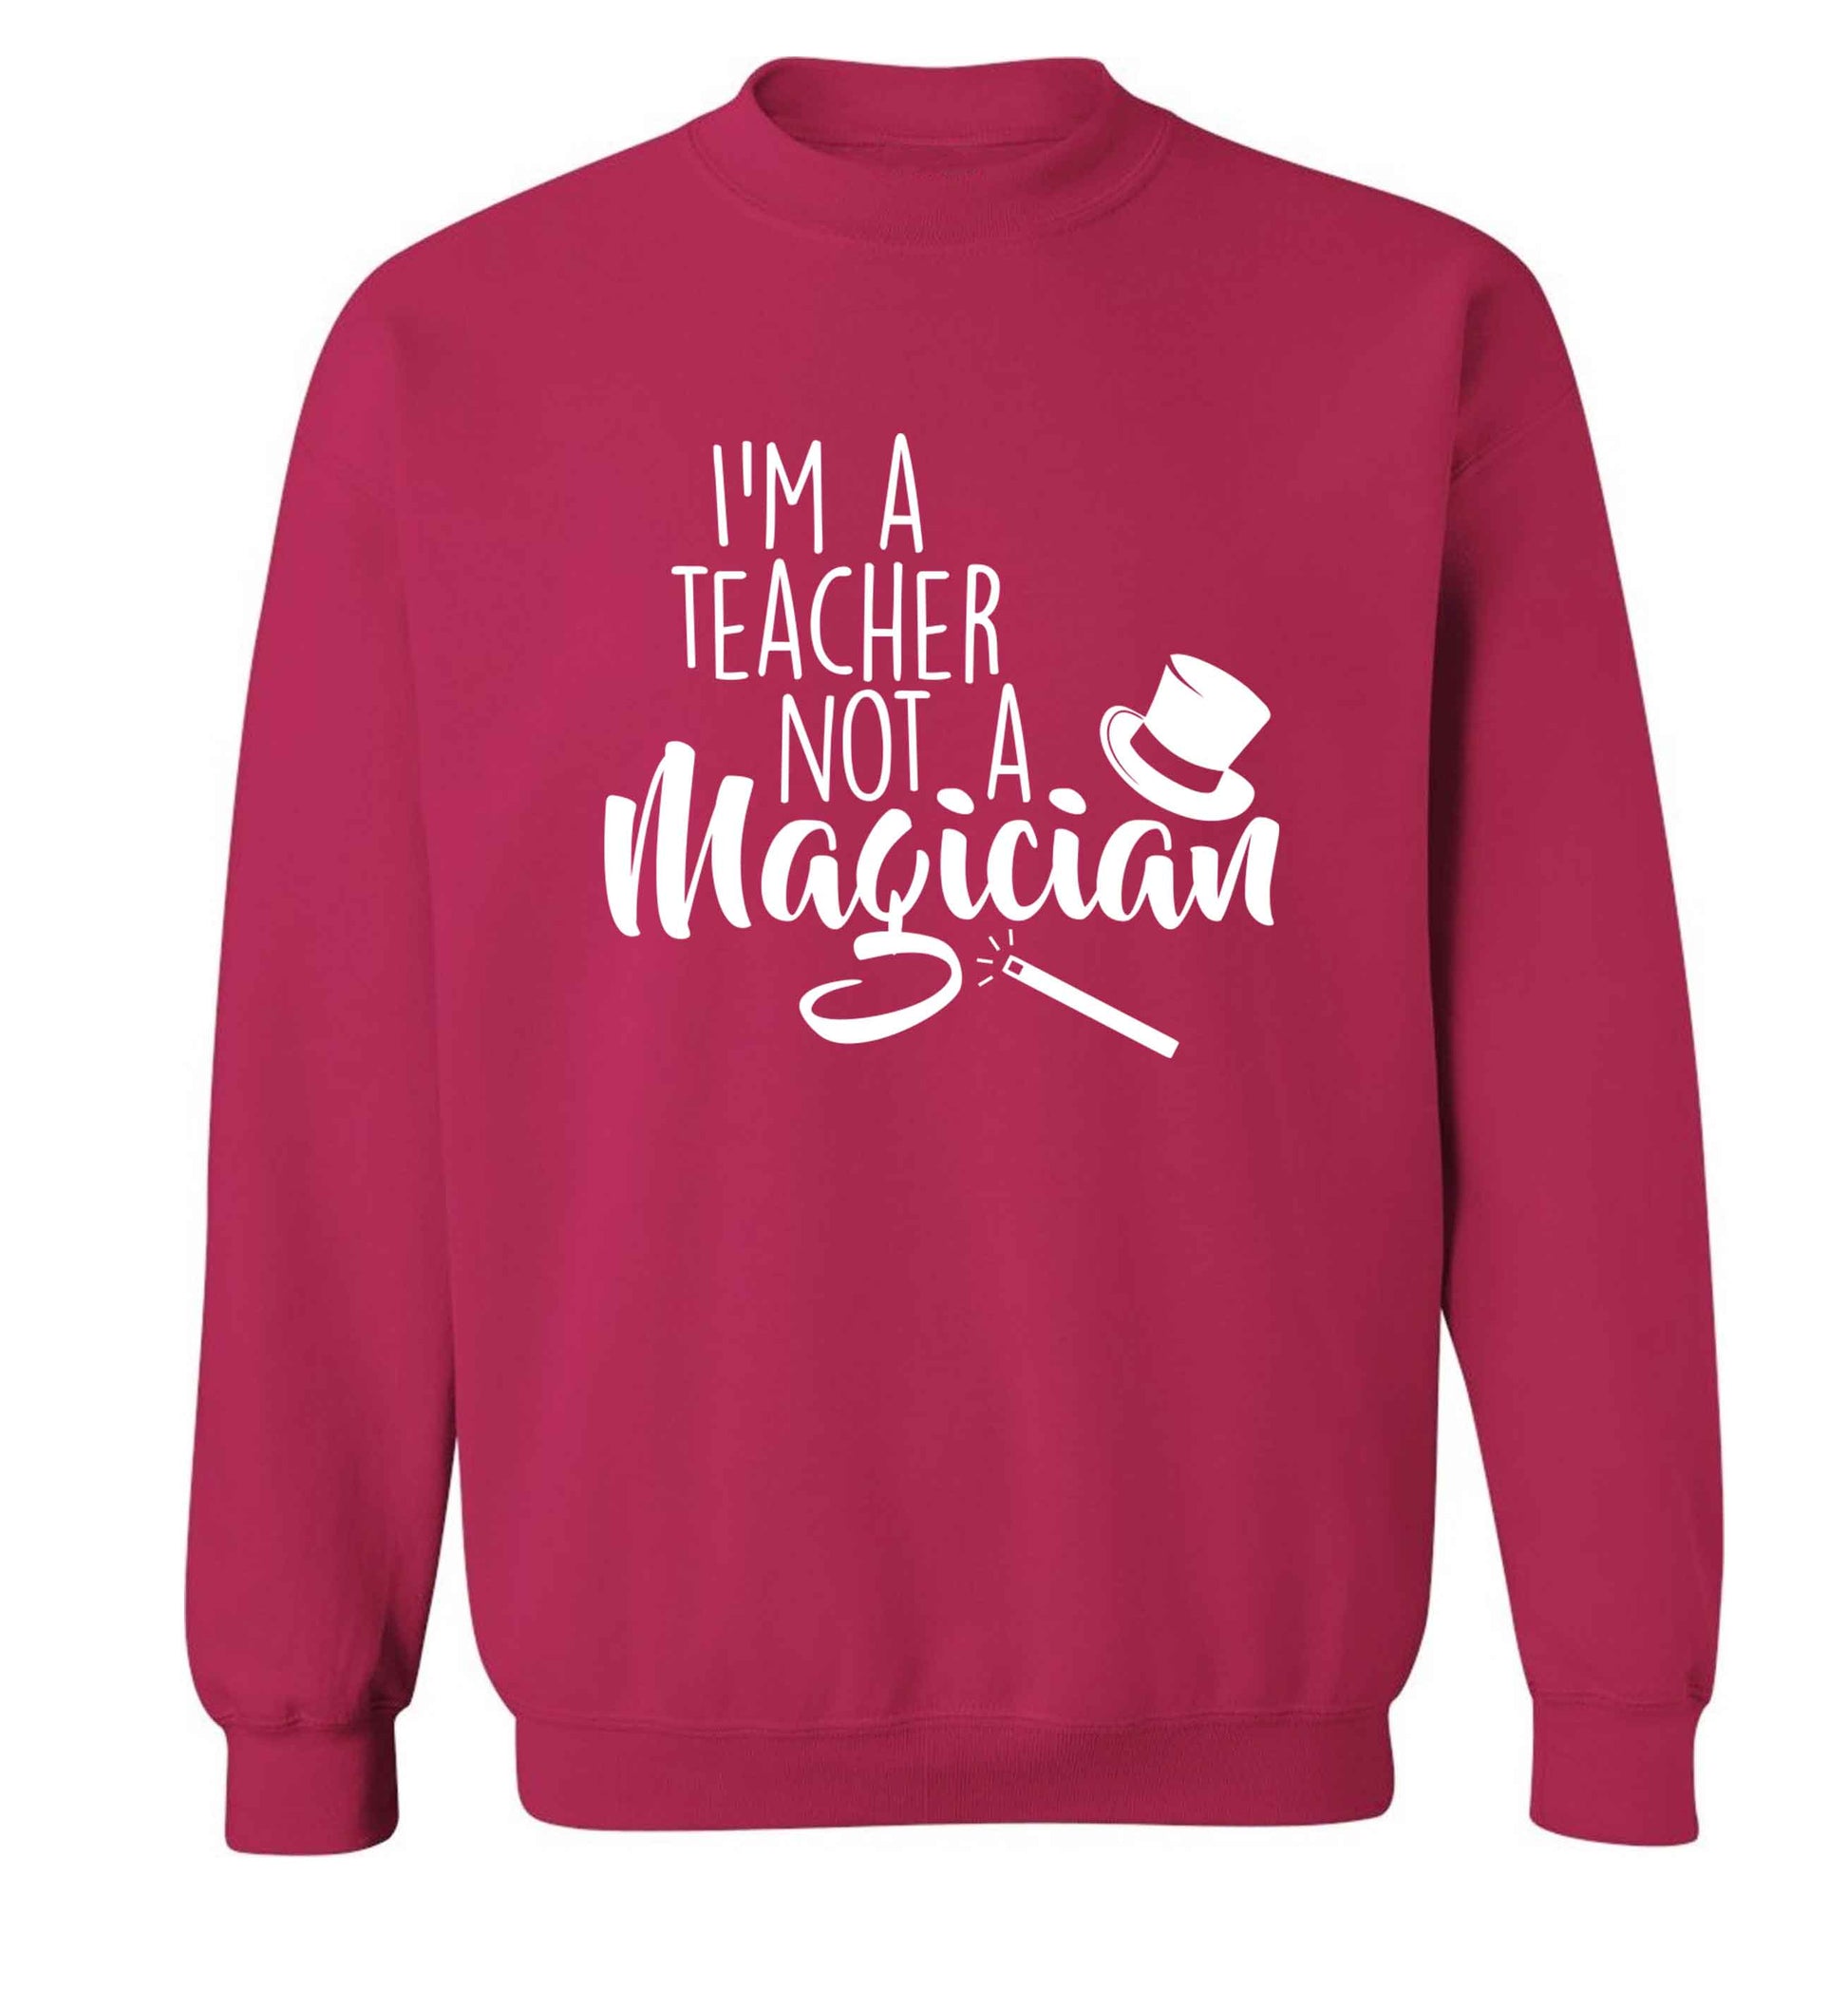 I'm a teacher not a magician adult's unisex pink sweater 2XL